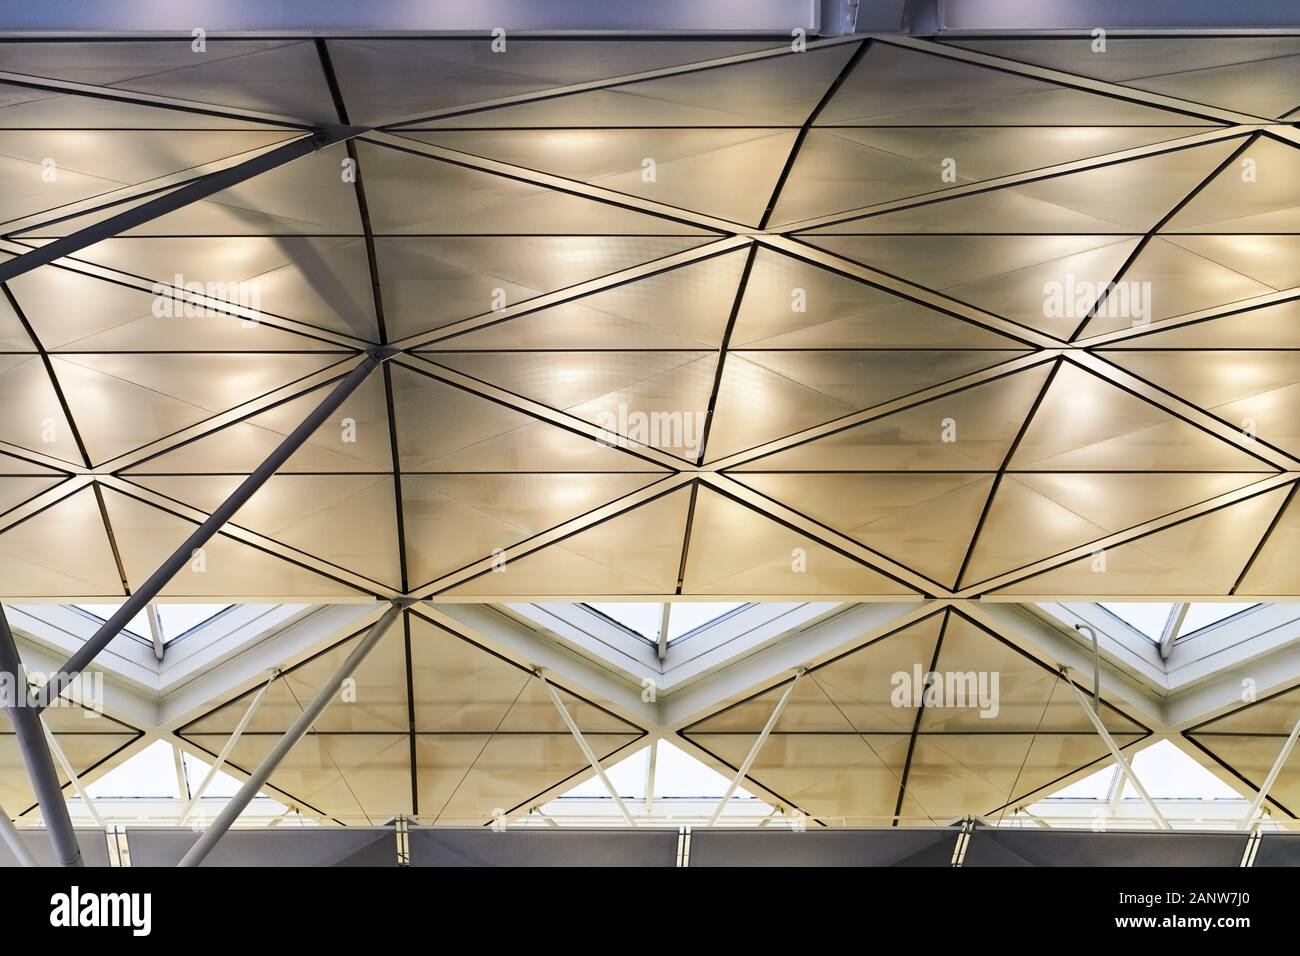 Hong Kong View At The Futuristic Ceiling Design Inside Hong Kong